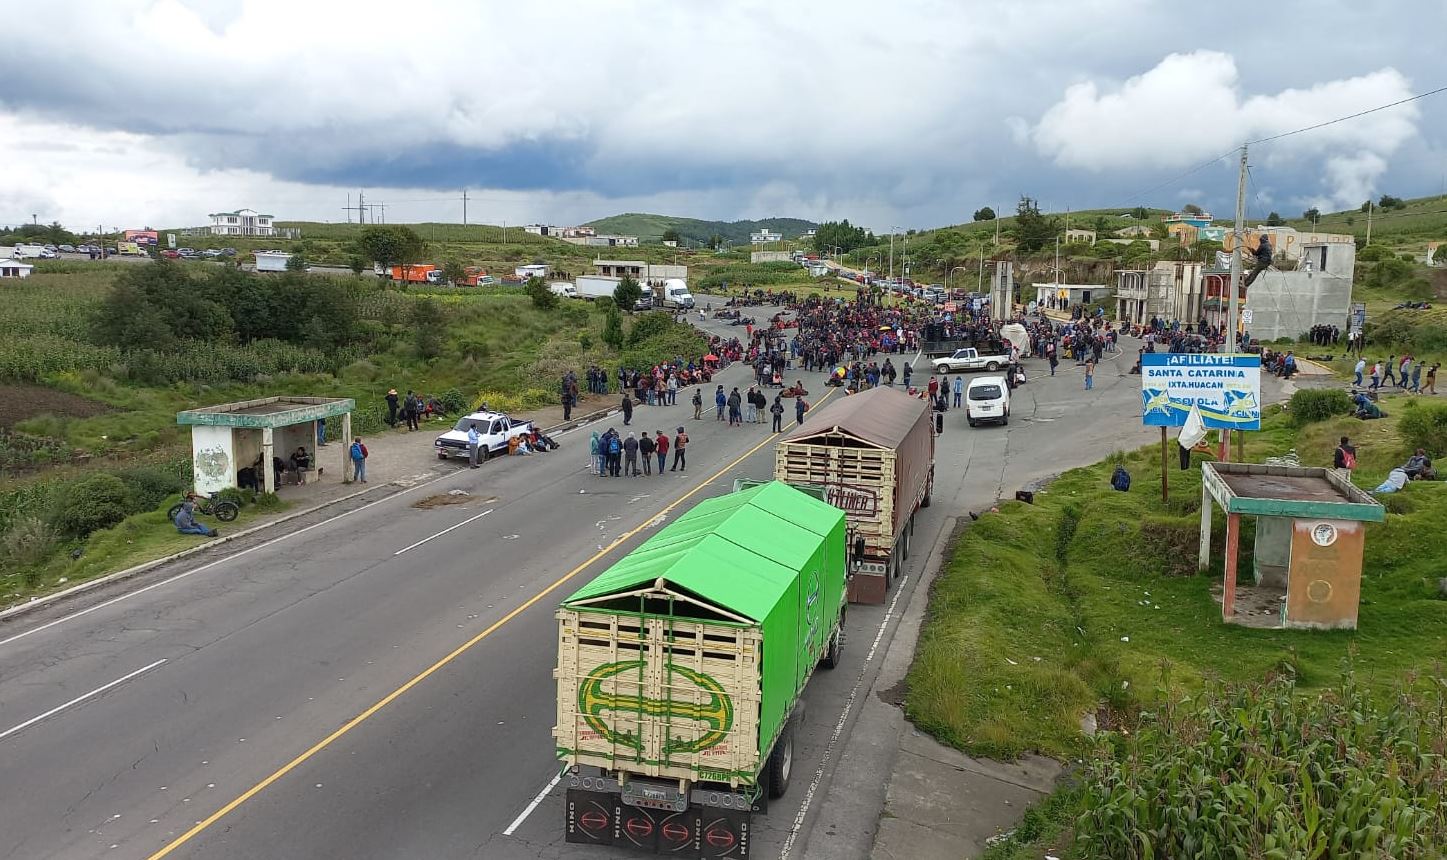 Vecinos de Santa Catarina Ixtahuacán, Sololá, bloquean el paso en km 170 de la ruta Interamericana, para exigir cese de ataques en zona limítrofe con Nahualá. (Foto Prensa Libre: Mynor Toc)